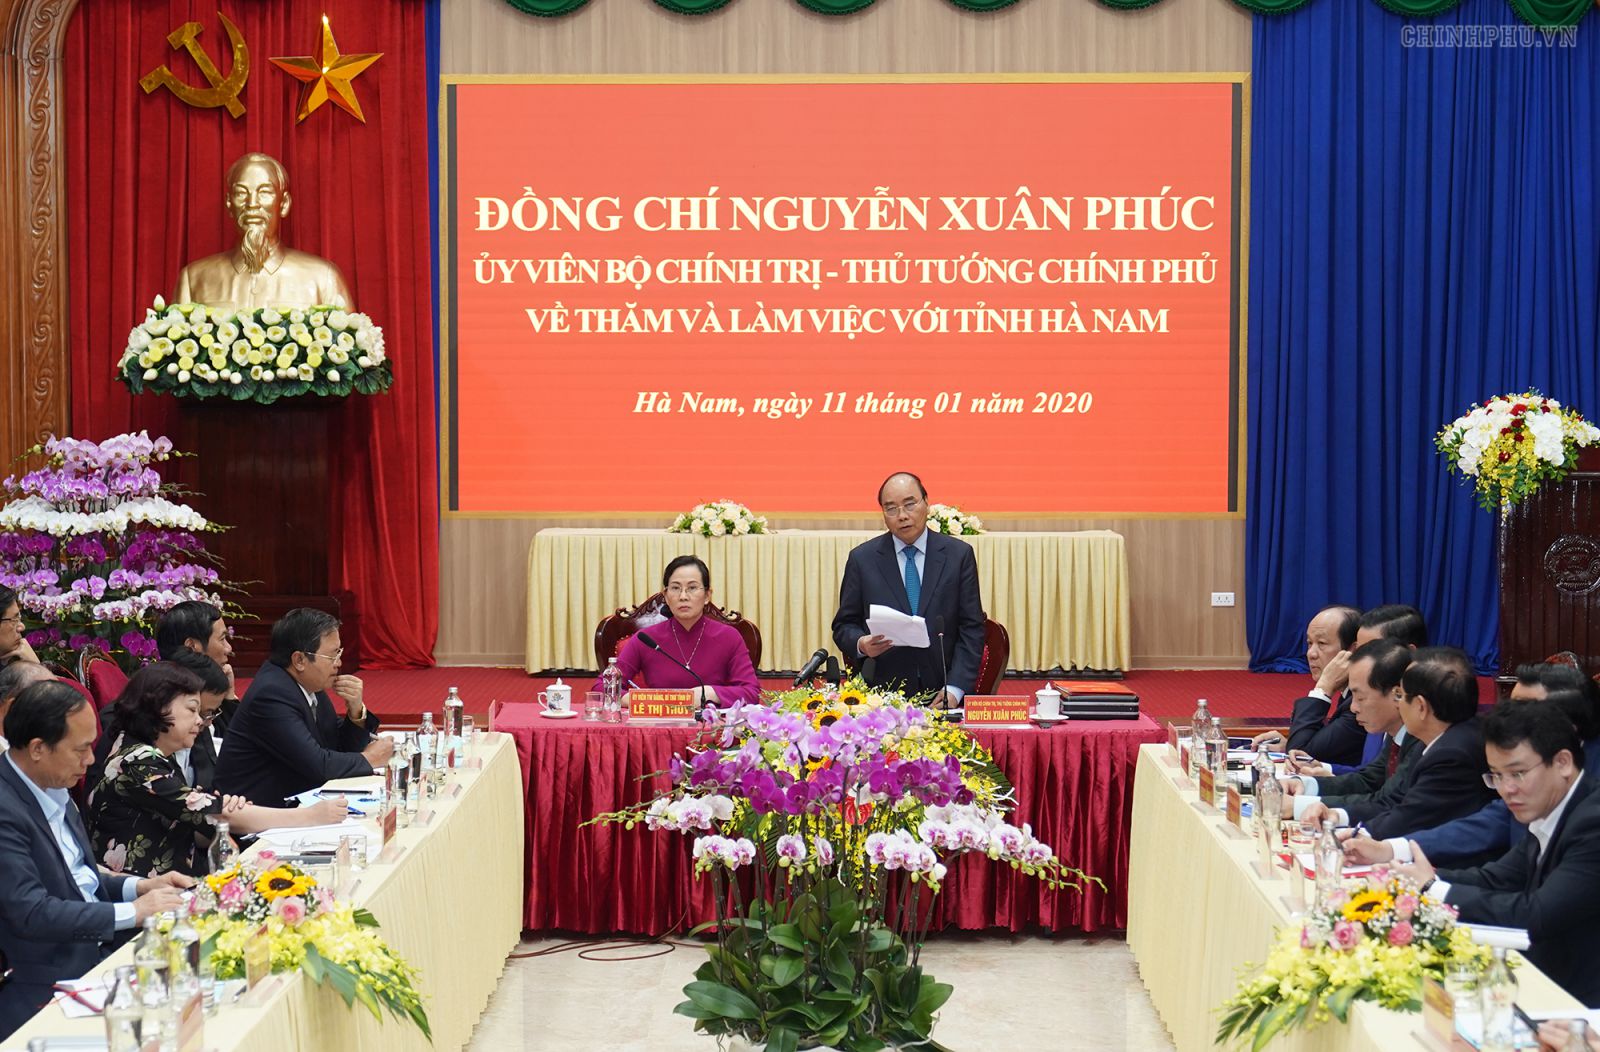 Thủ tướng Nguyễn Xuân Phúc nhấn mạnh tại buổi làm việc với lãnh đạo chủ chốt tỉnh Hà Nam về tình hình kinh tế - xã hội địa phương, chiều 11/12.